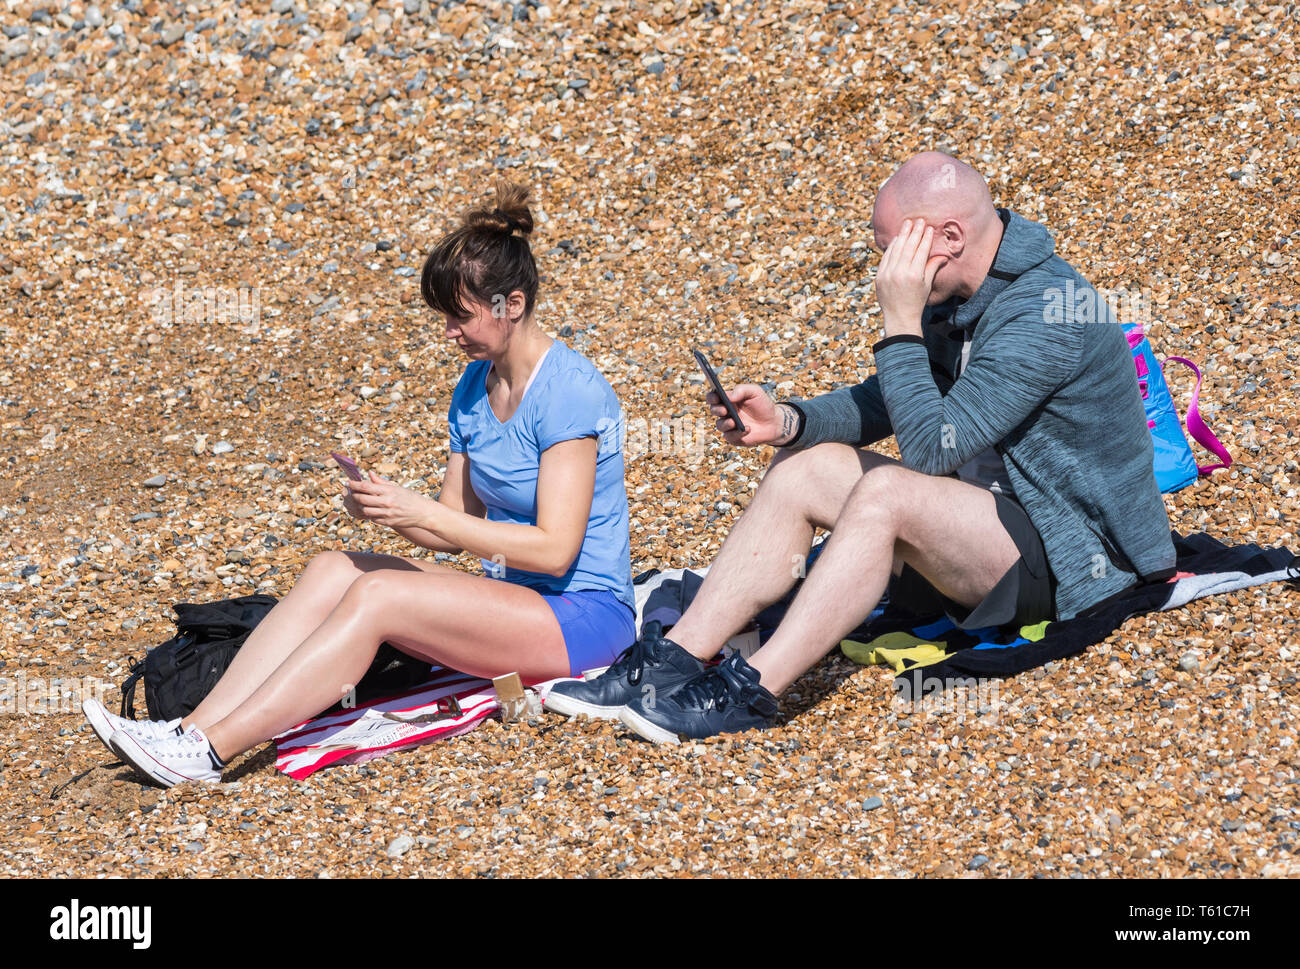 Paar Leute in ihrer 30. Sitzung am Strand an einem warmen Tag im Frühling, ignorieren einander während der Verwendung von Handys, in England, Großbritannien. Stockfoto